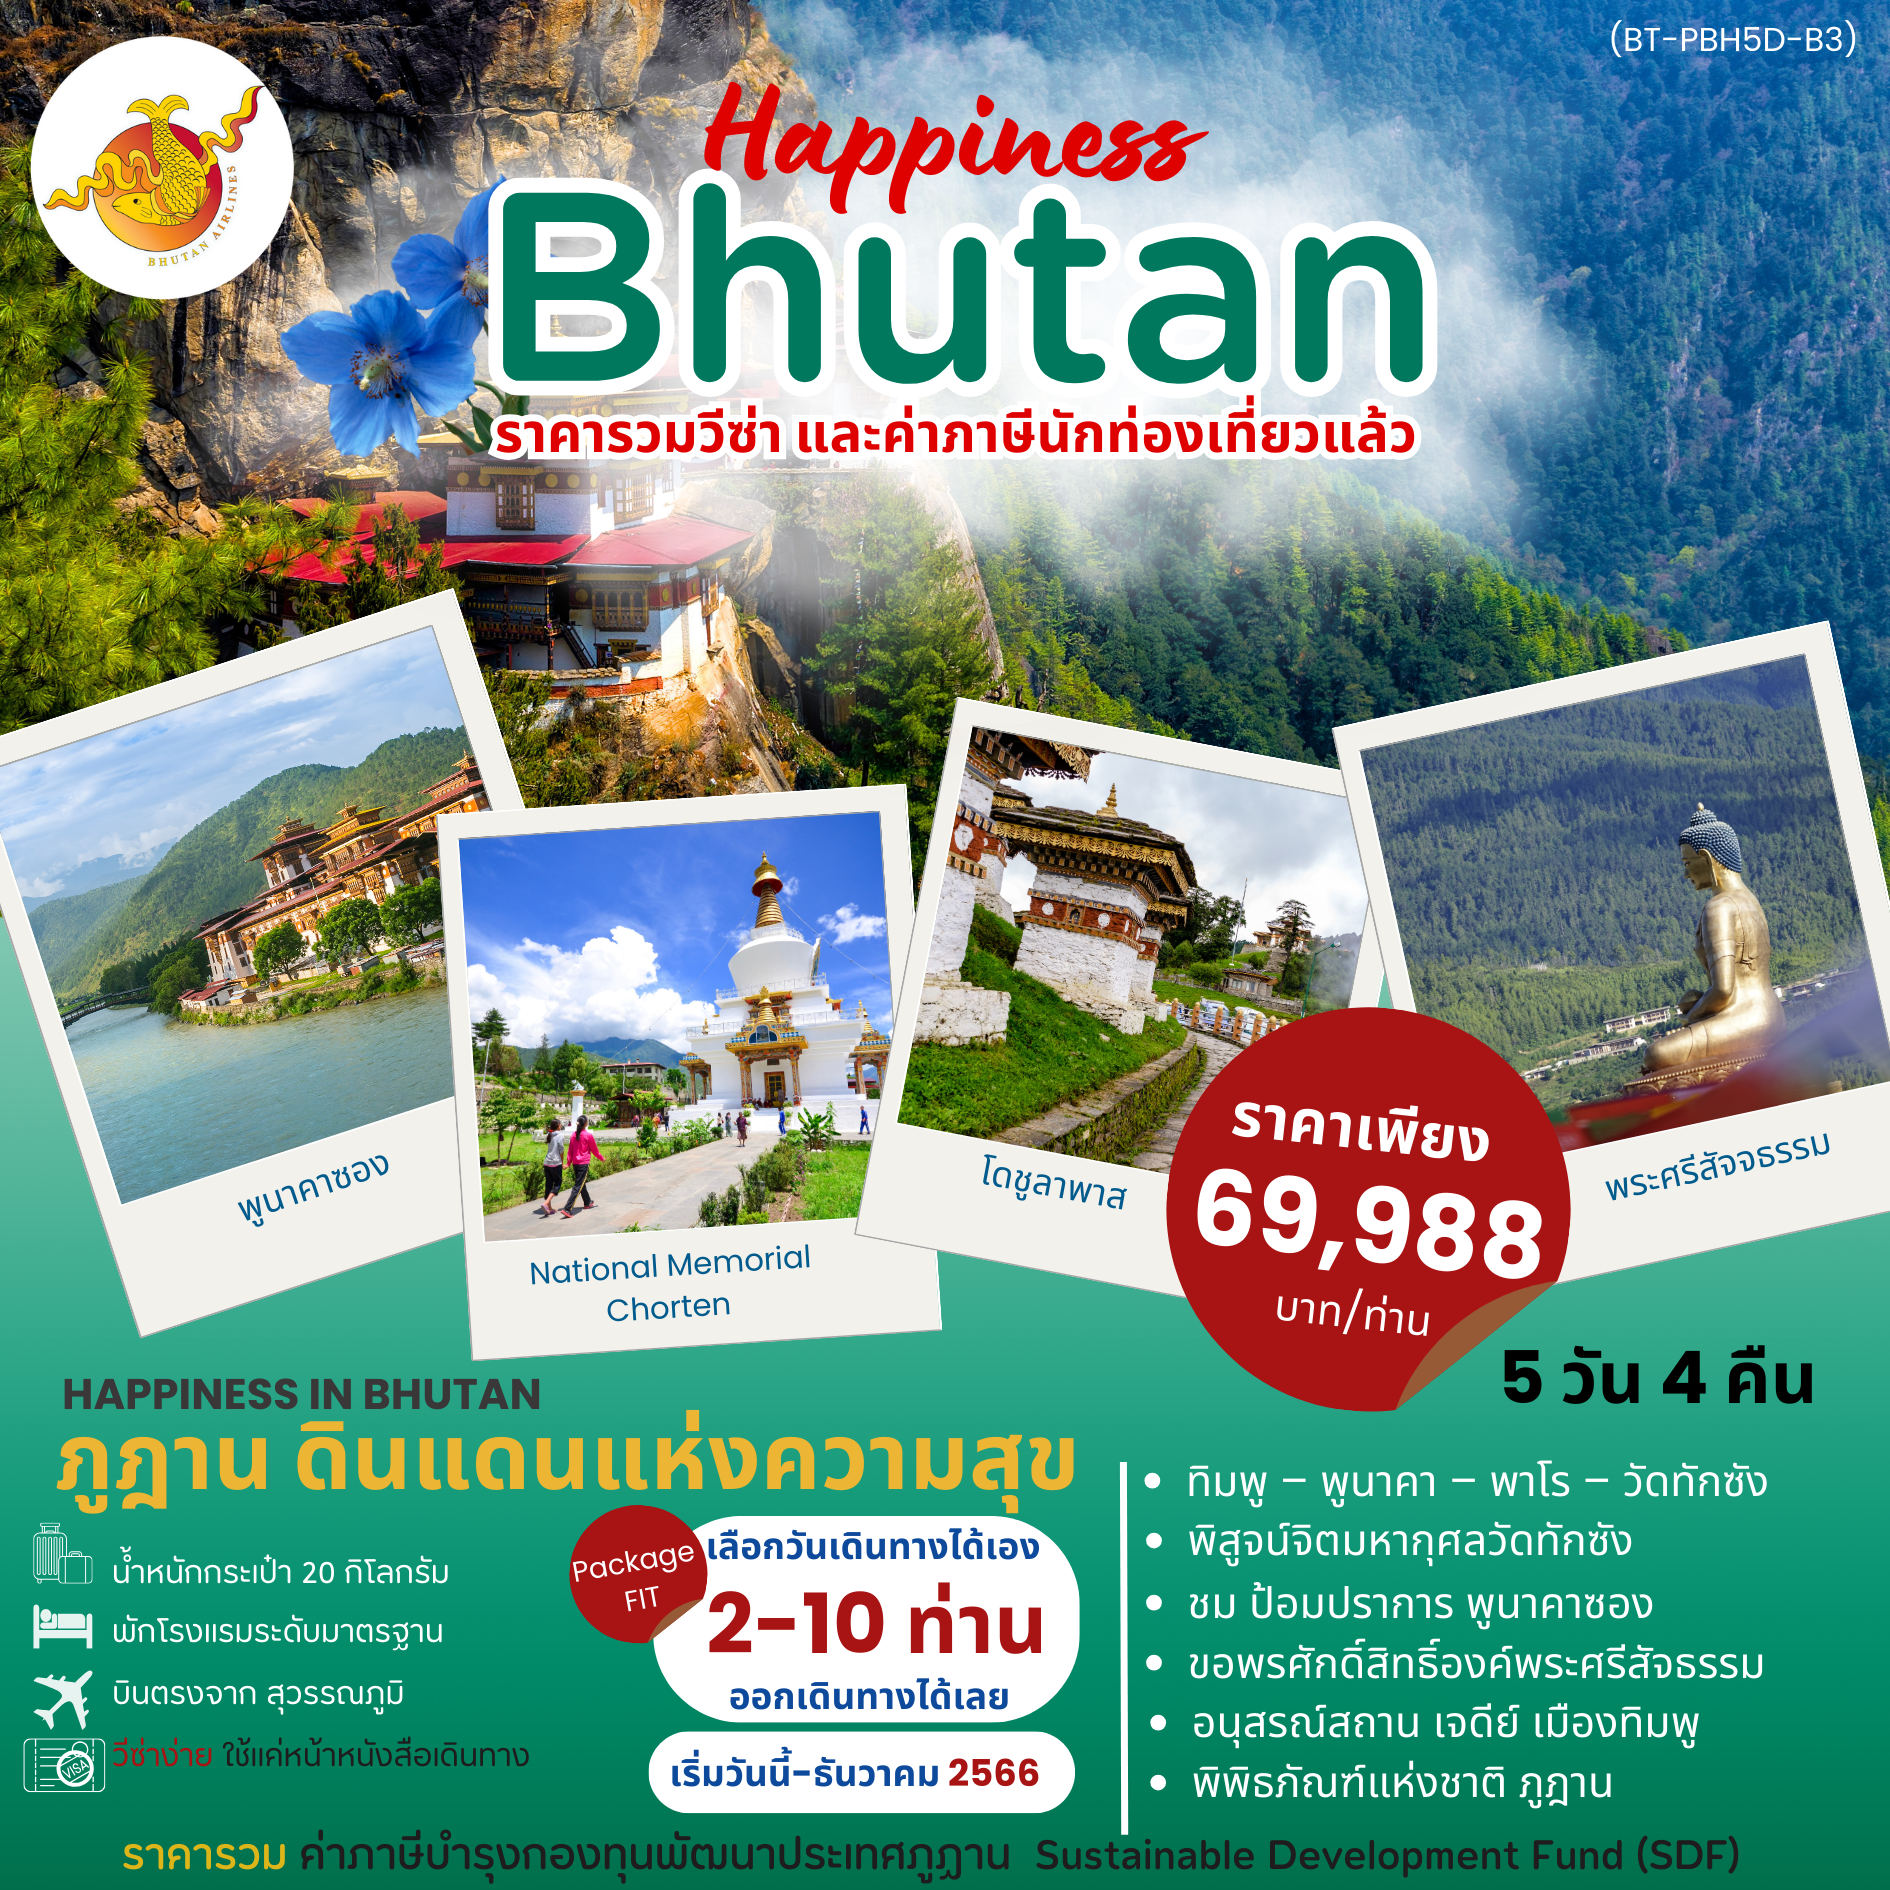 ทัวร์ภูฎาน HAPPINESS IN BHUTAN 5D4N